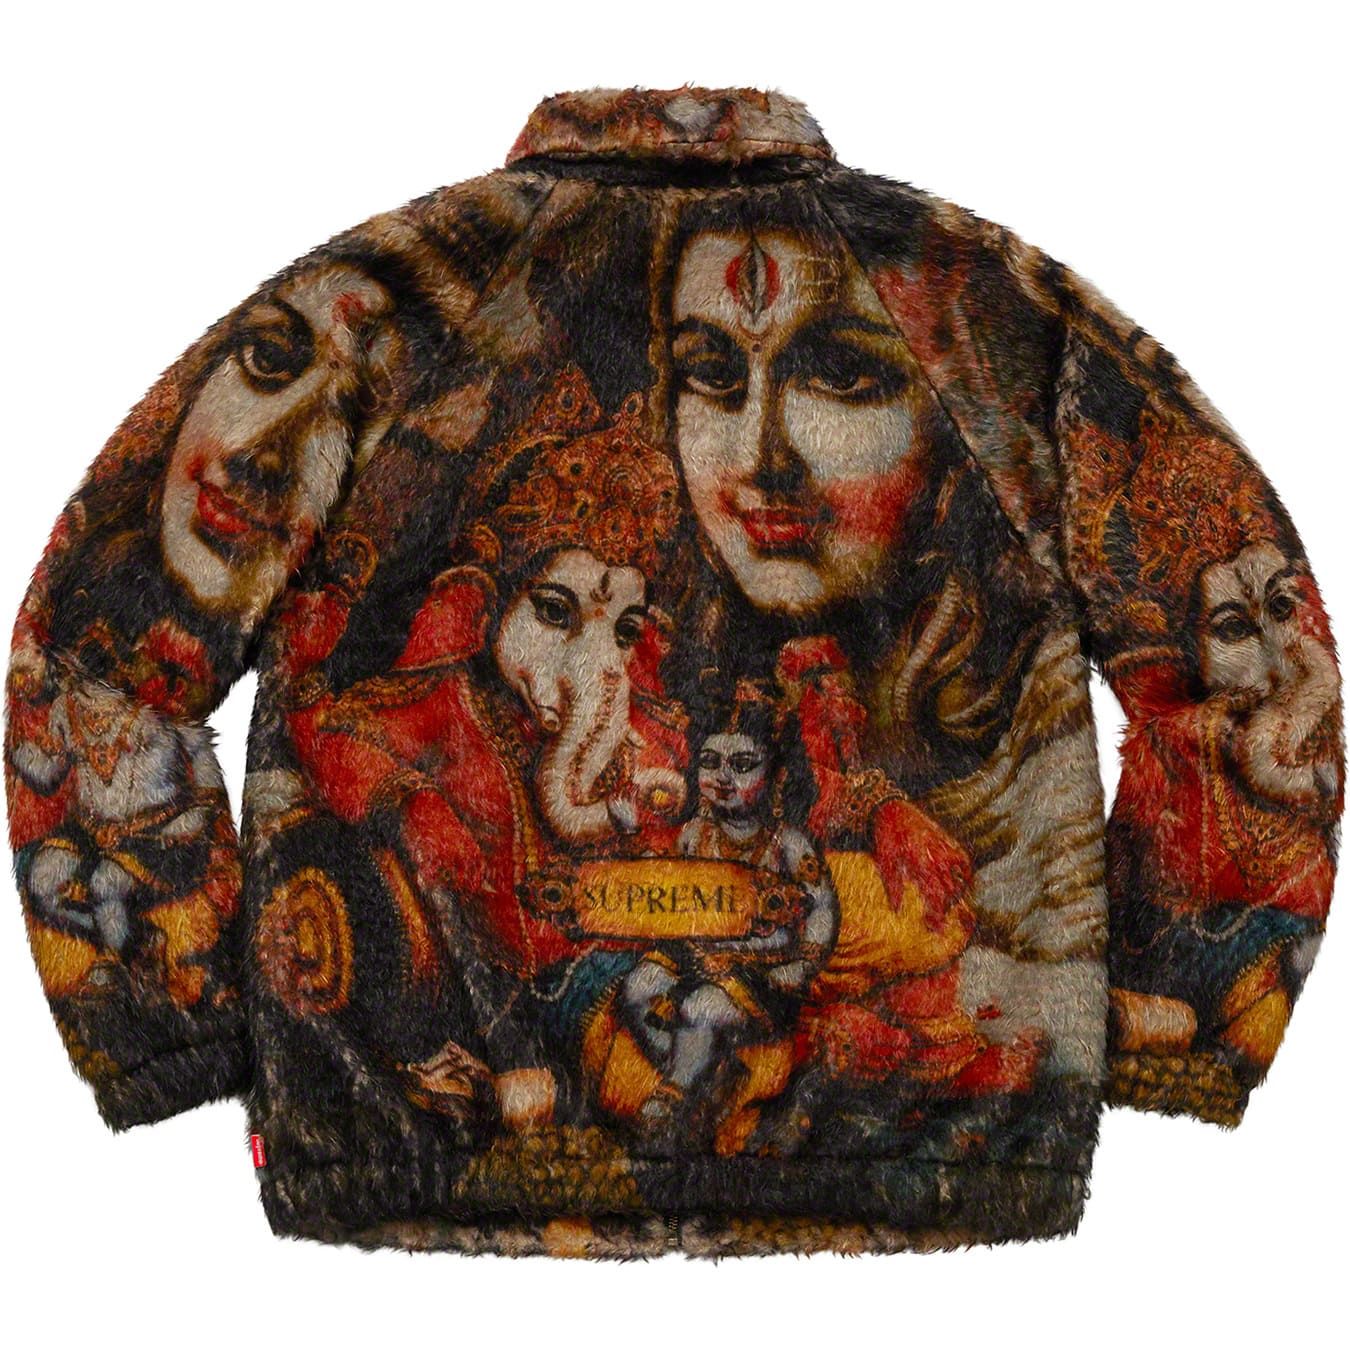 Supreme Ganesh Faux Fur Jacket